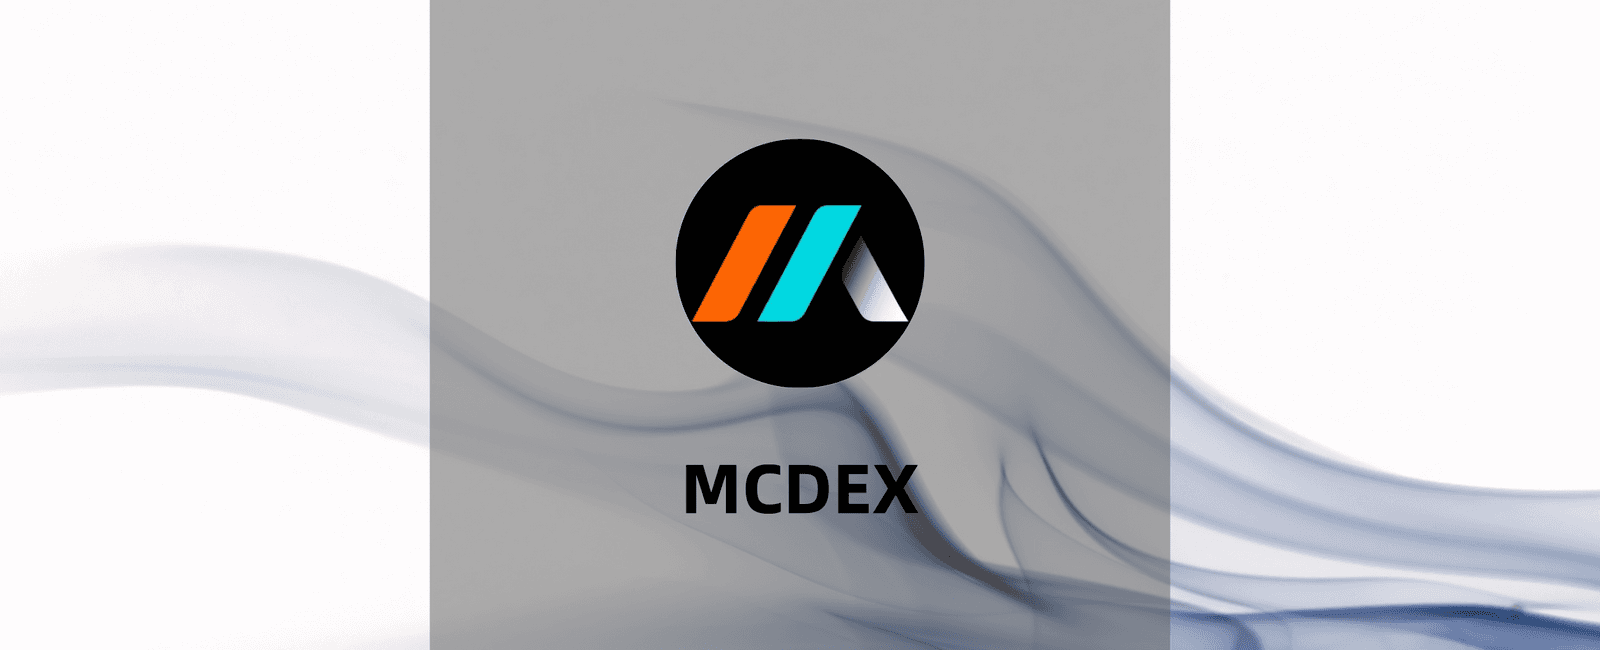 MCDEX-集中AMM的衍生品交易平台教程